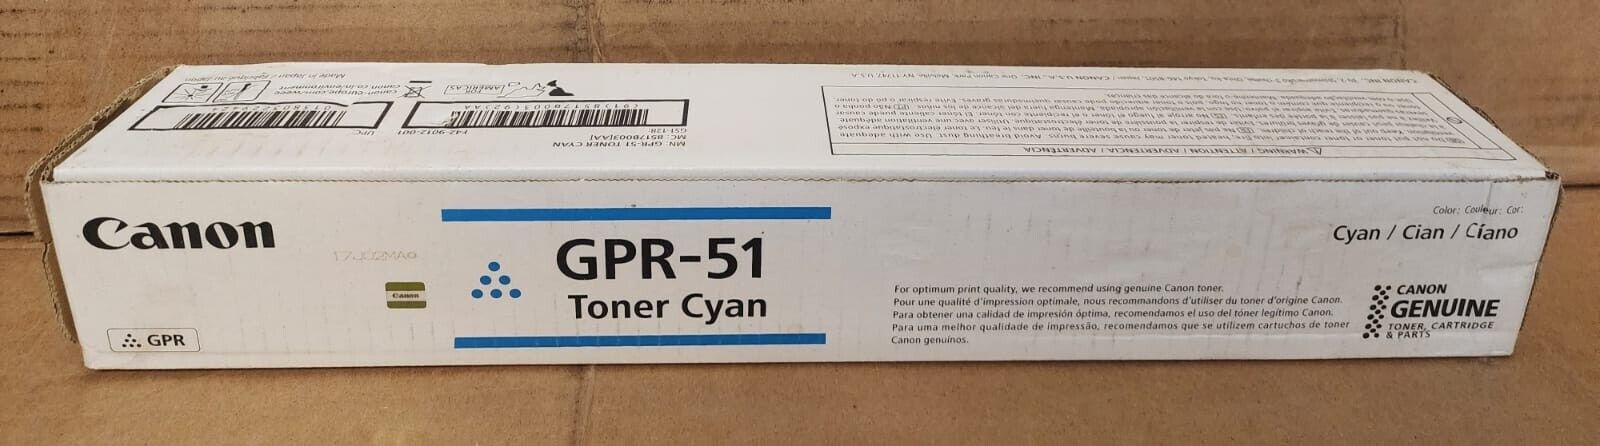 Canon Cyan Toner Cartridge  GPR-51 